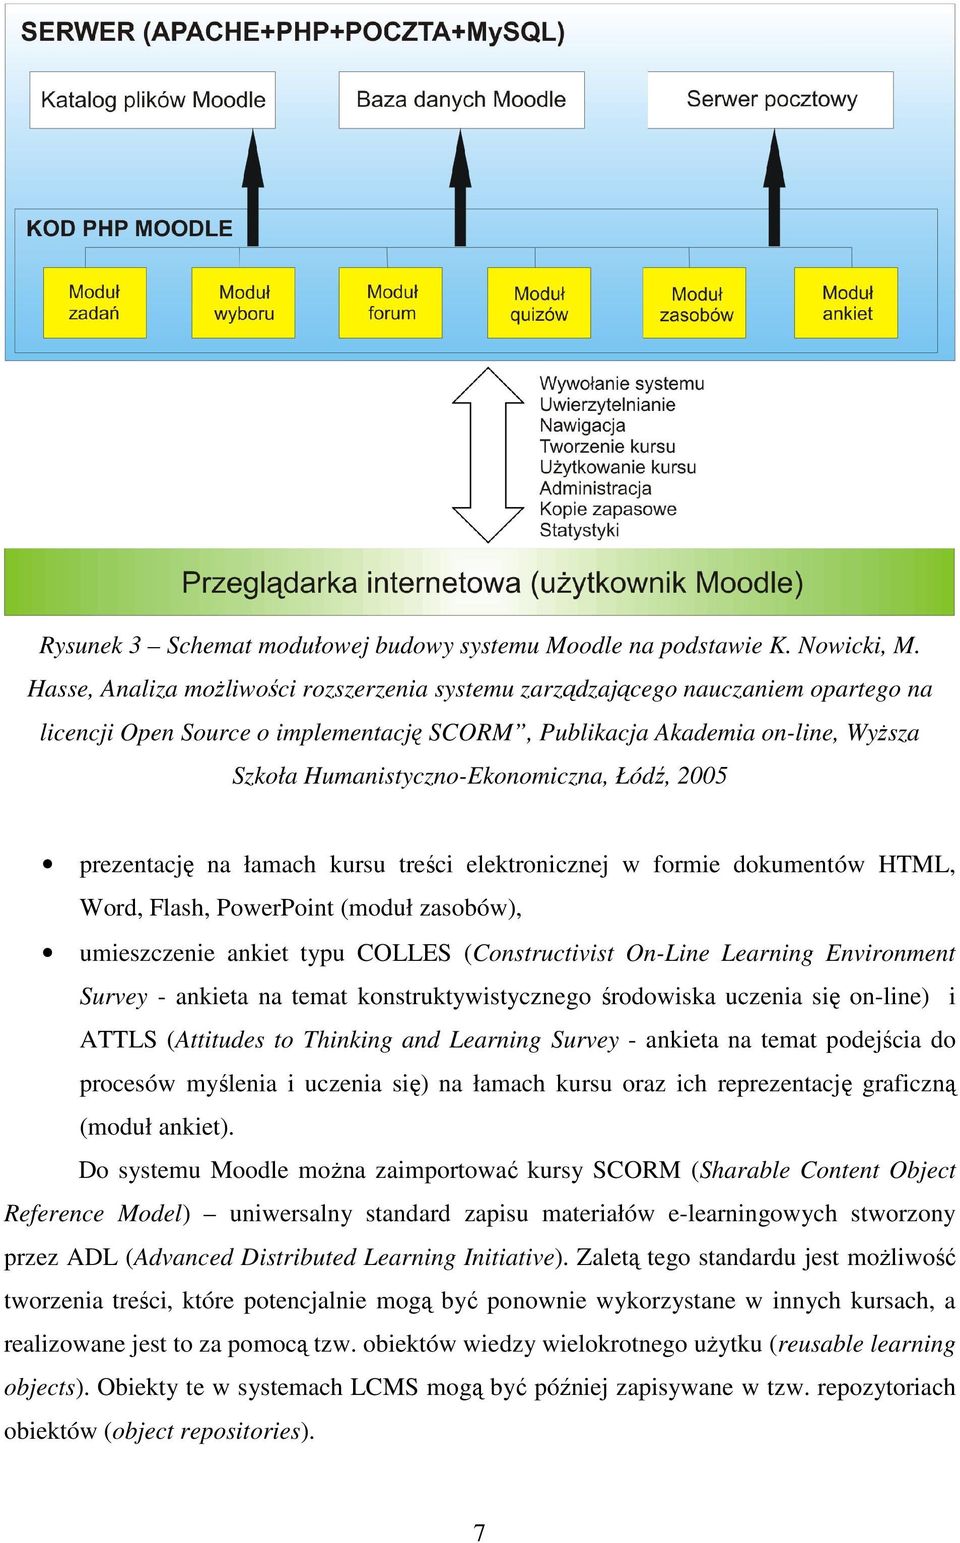 Łódź, 2005 prezentację na łamach kursu treści elektronicznej w formie dokumentów HTML, Word, Flash, PowerPoint (moduł zasobów), umieszczenie ankiet typu COLLES (Constructivist On-Line Learning